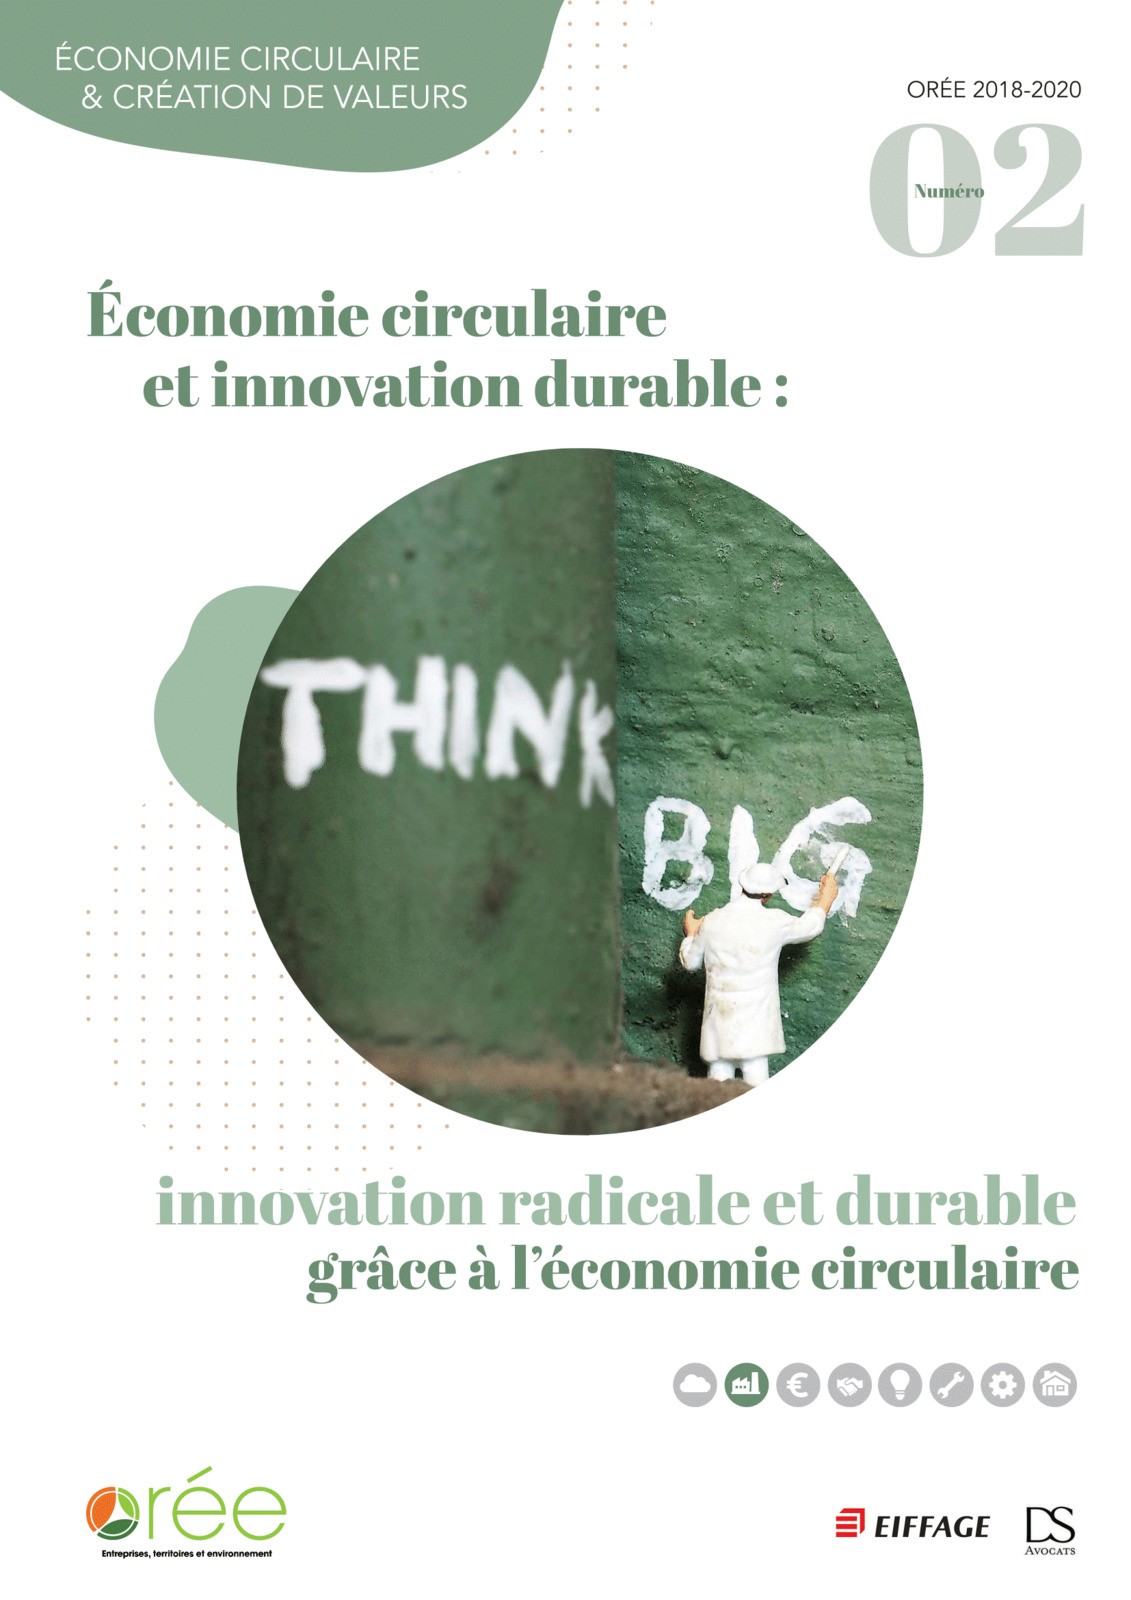 Publication d'un recueil qui met en avant les apports de l'économie circulaire à l'innovation